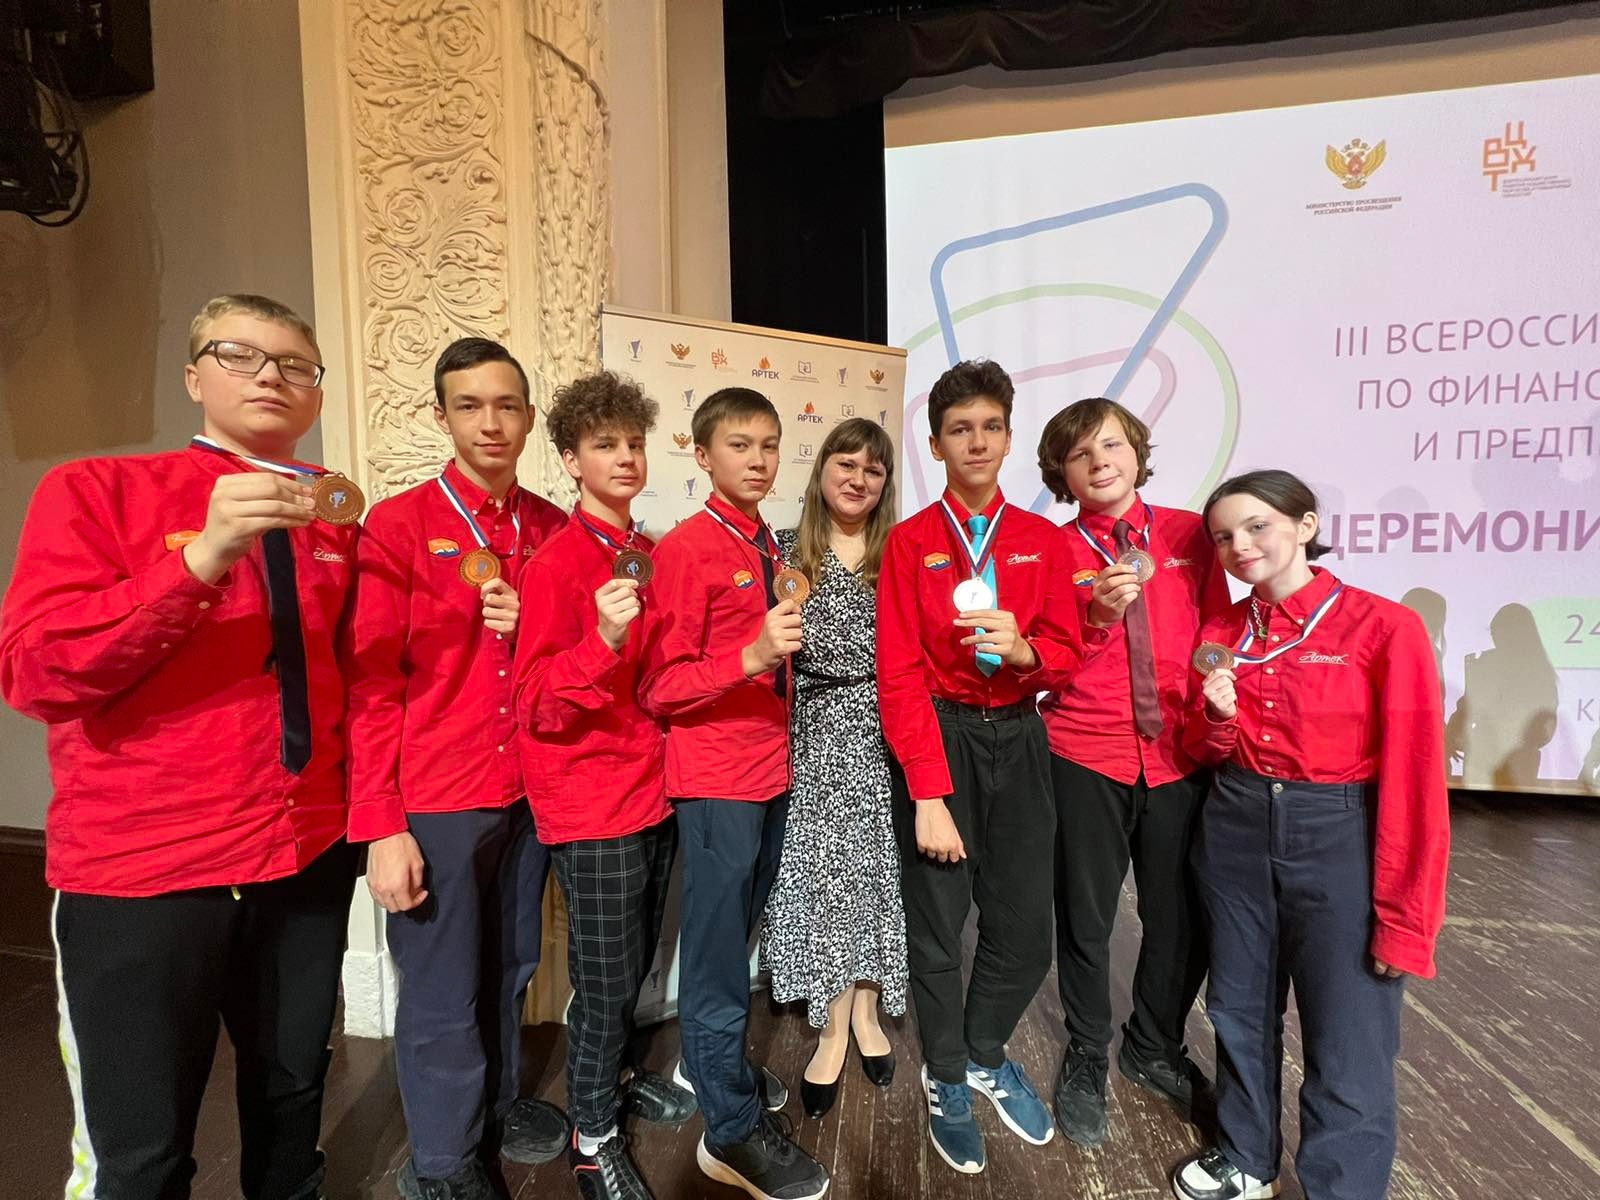 Ульяновские школьники стали призёрами III Всероссийского чемпионата по финансовой грамотности.